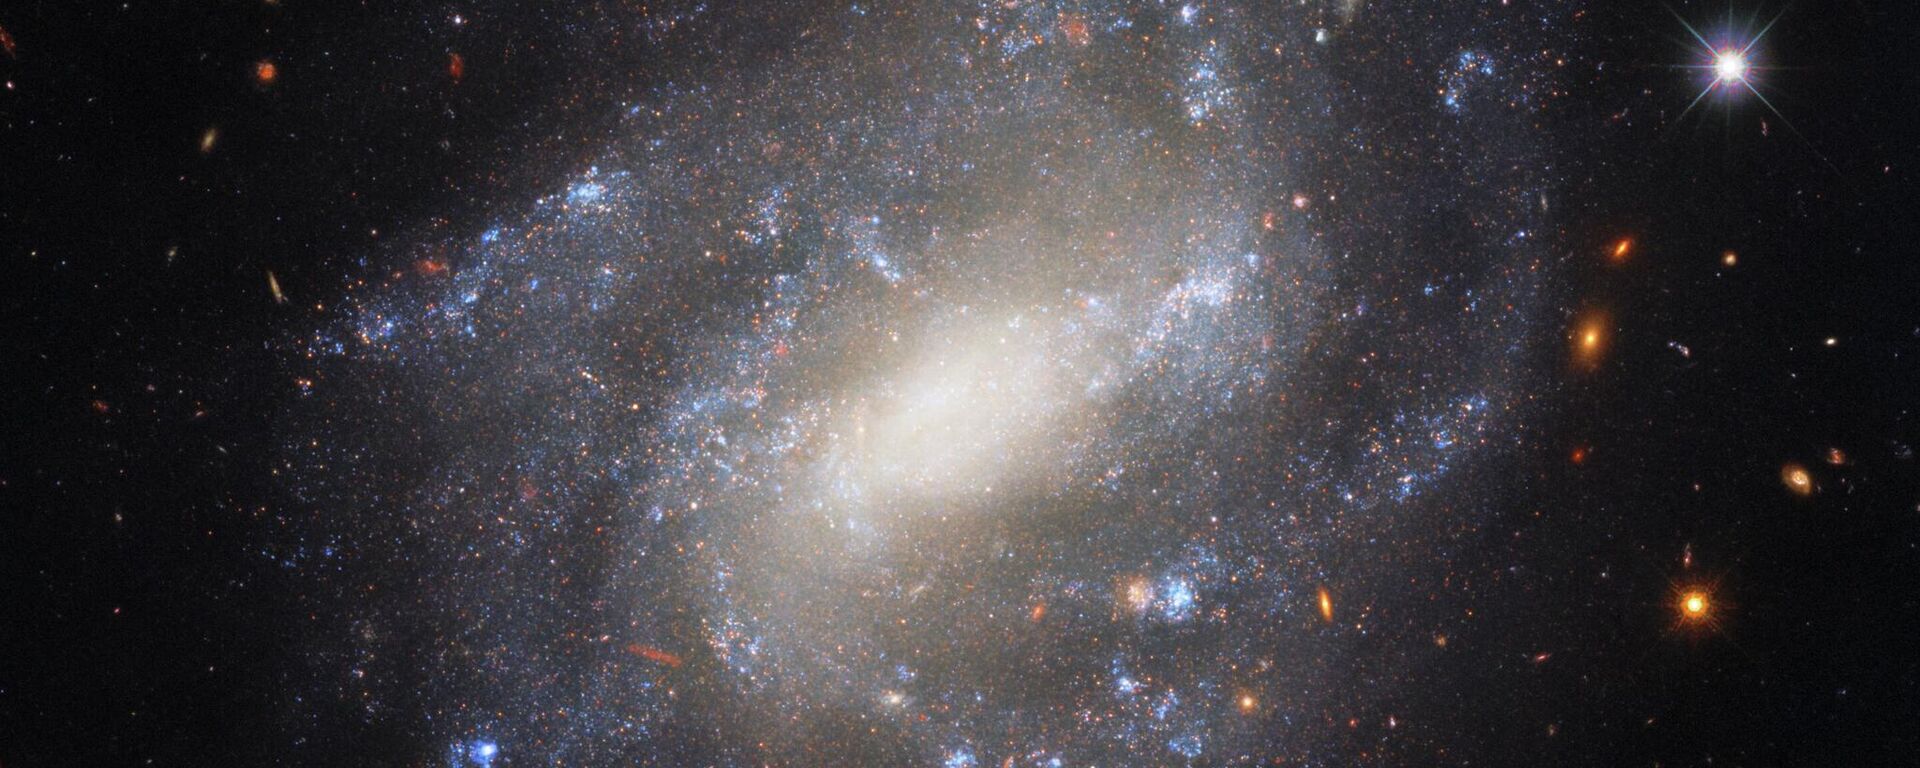 Image of spiral galaxy UGC 9391 taken by Hubble Space Telescope’s Wide Field Camera 3 - Sputnik International, 1920, 09.12.2022